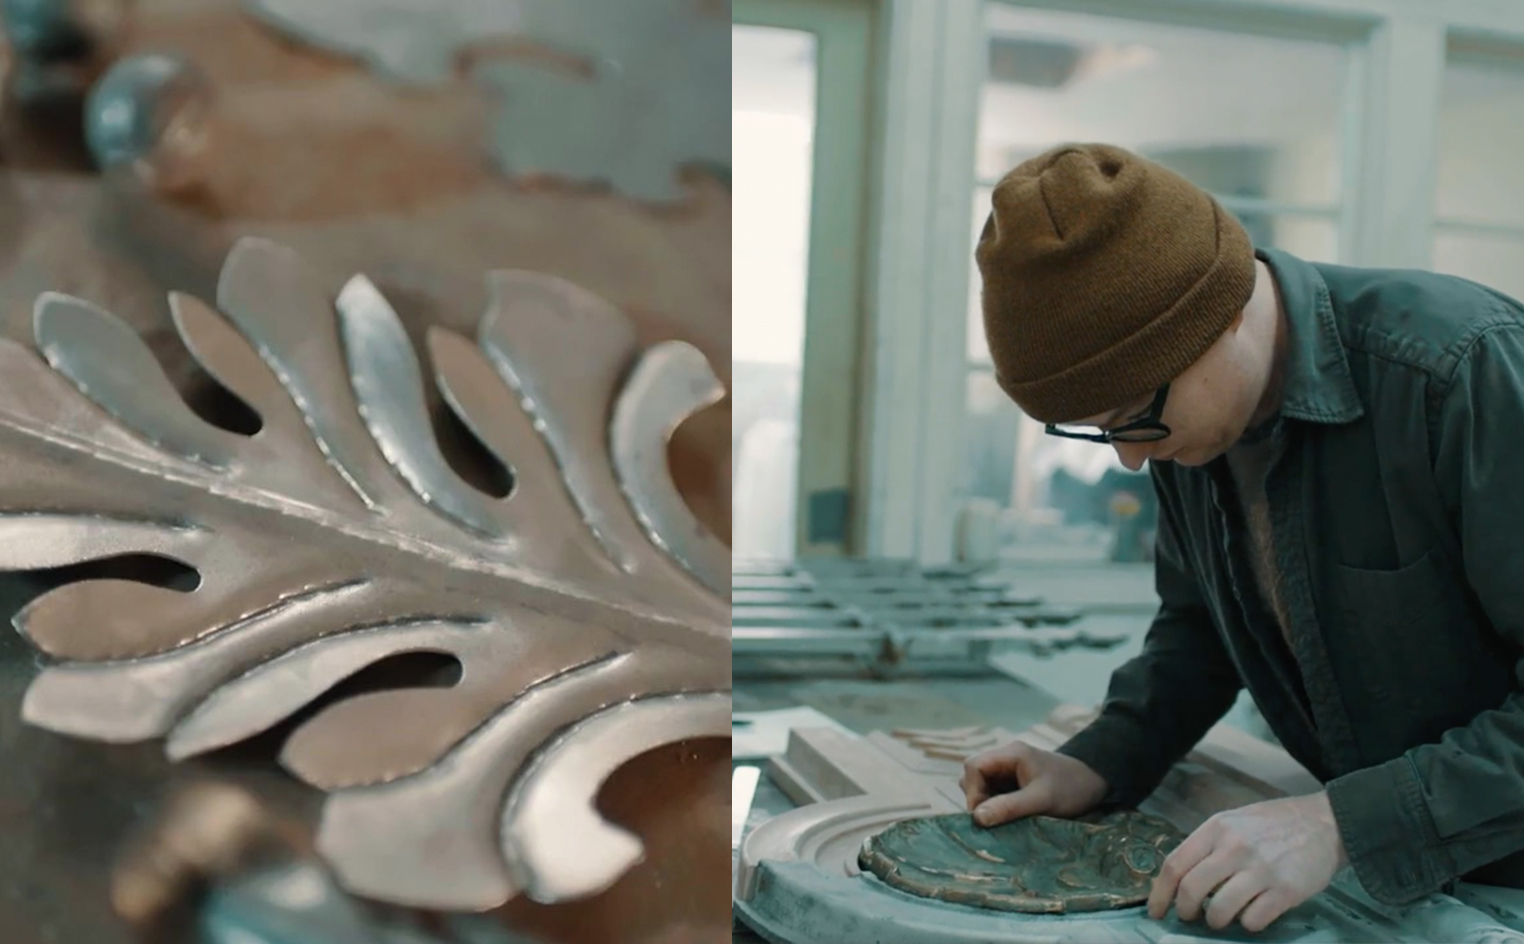 Voyez le travail complémentaire du métallier Louis Barrette et du forgeron Olivier Maranda qui, dans un même atelier, accueillent des projets variés : restauration de patrimoine, œuvre d’art publique, sculpture, installation et ferronnerie d'art. 